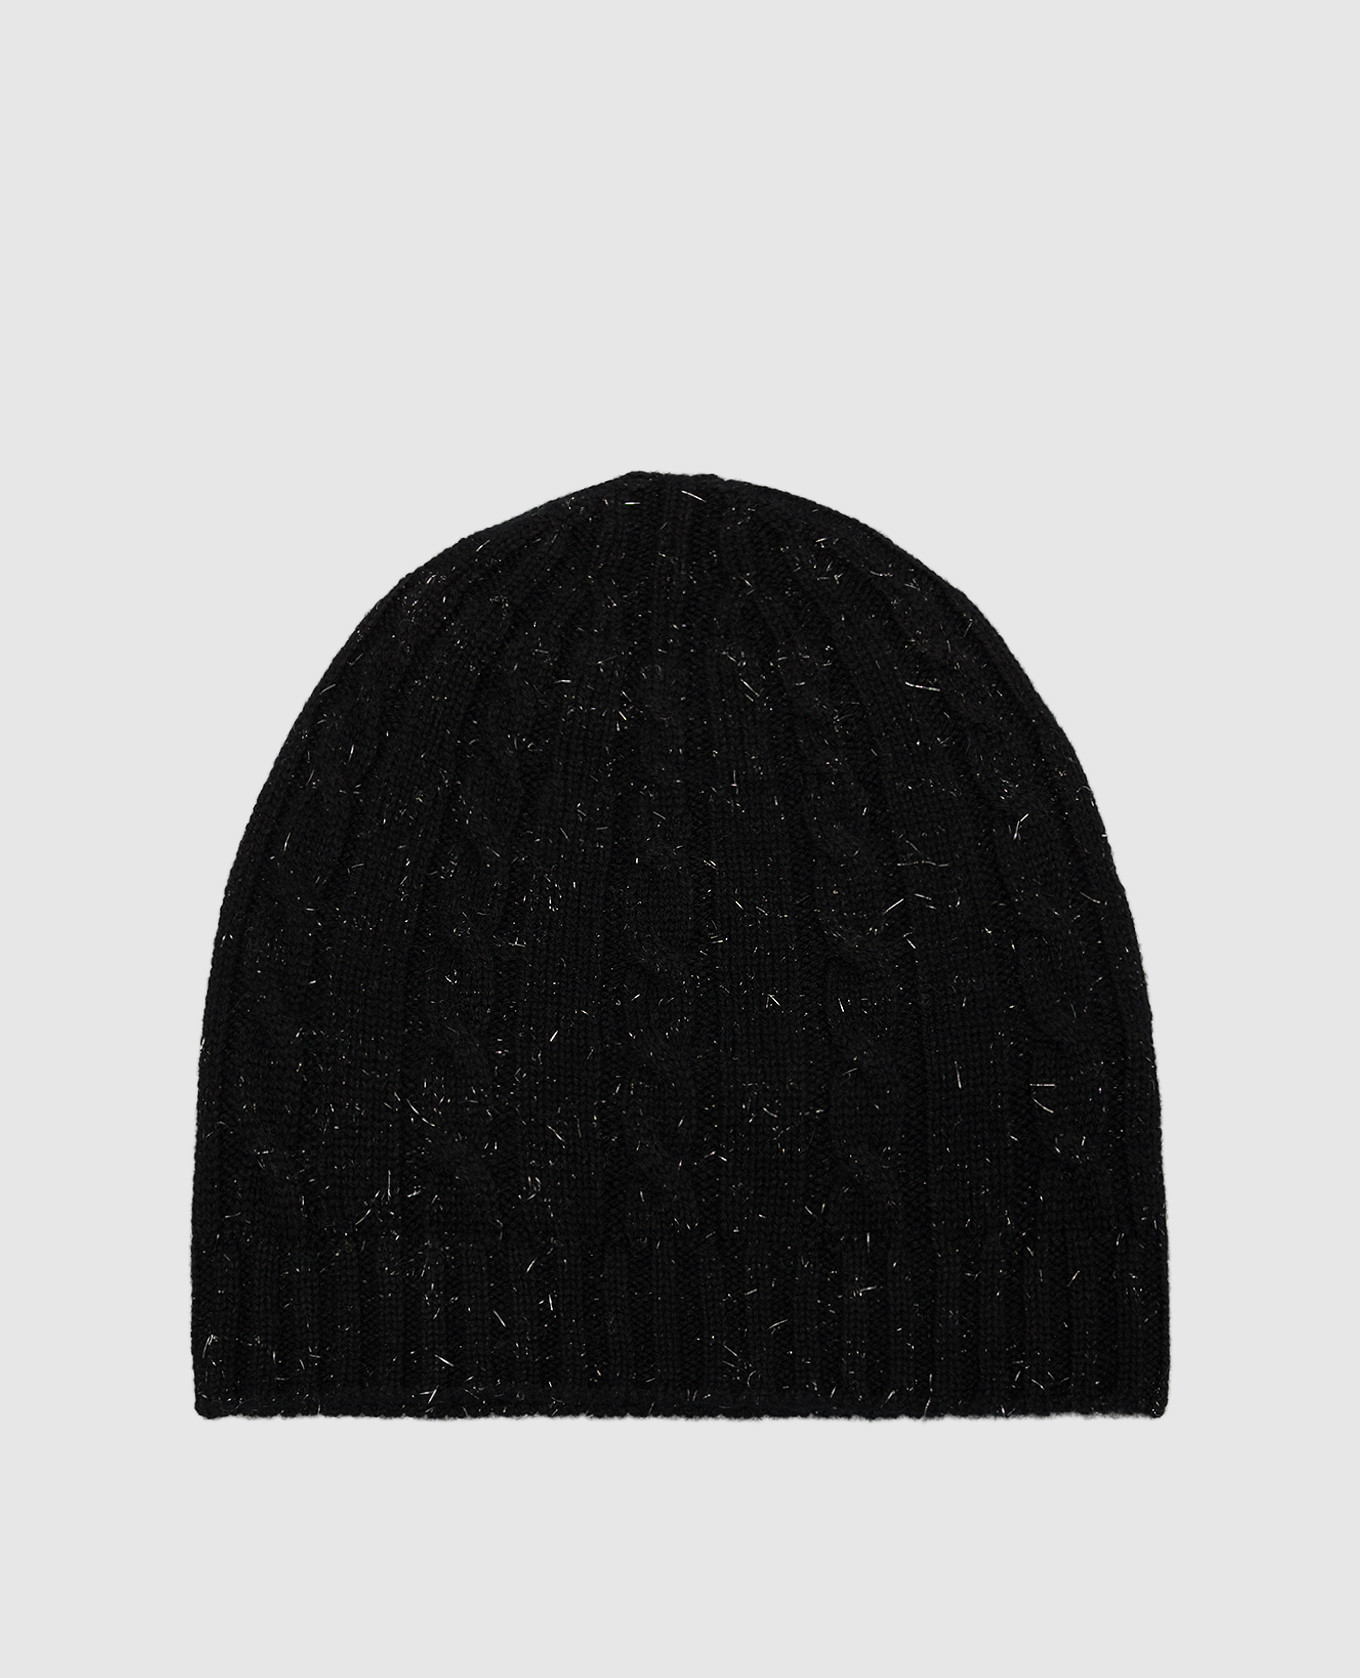 Black cap with lurex